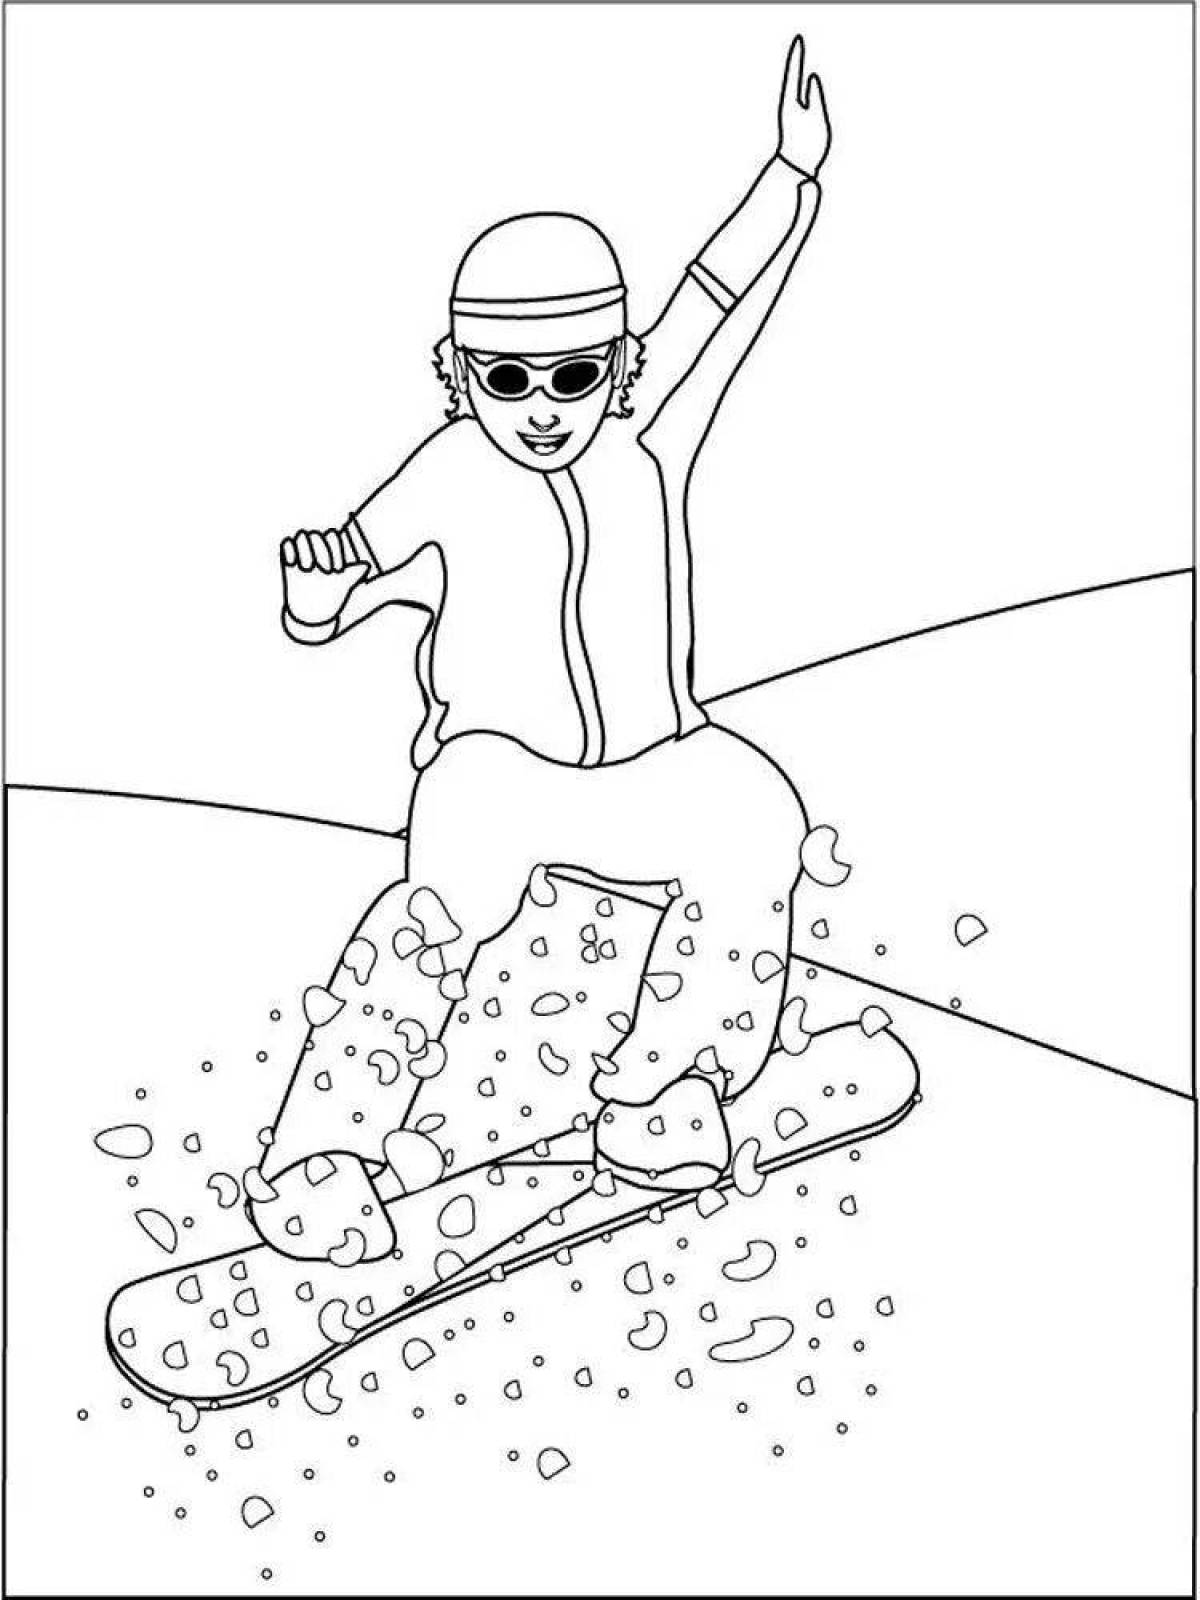 Snowboarder #4